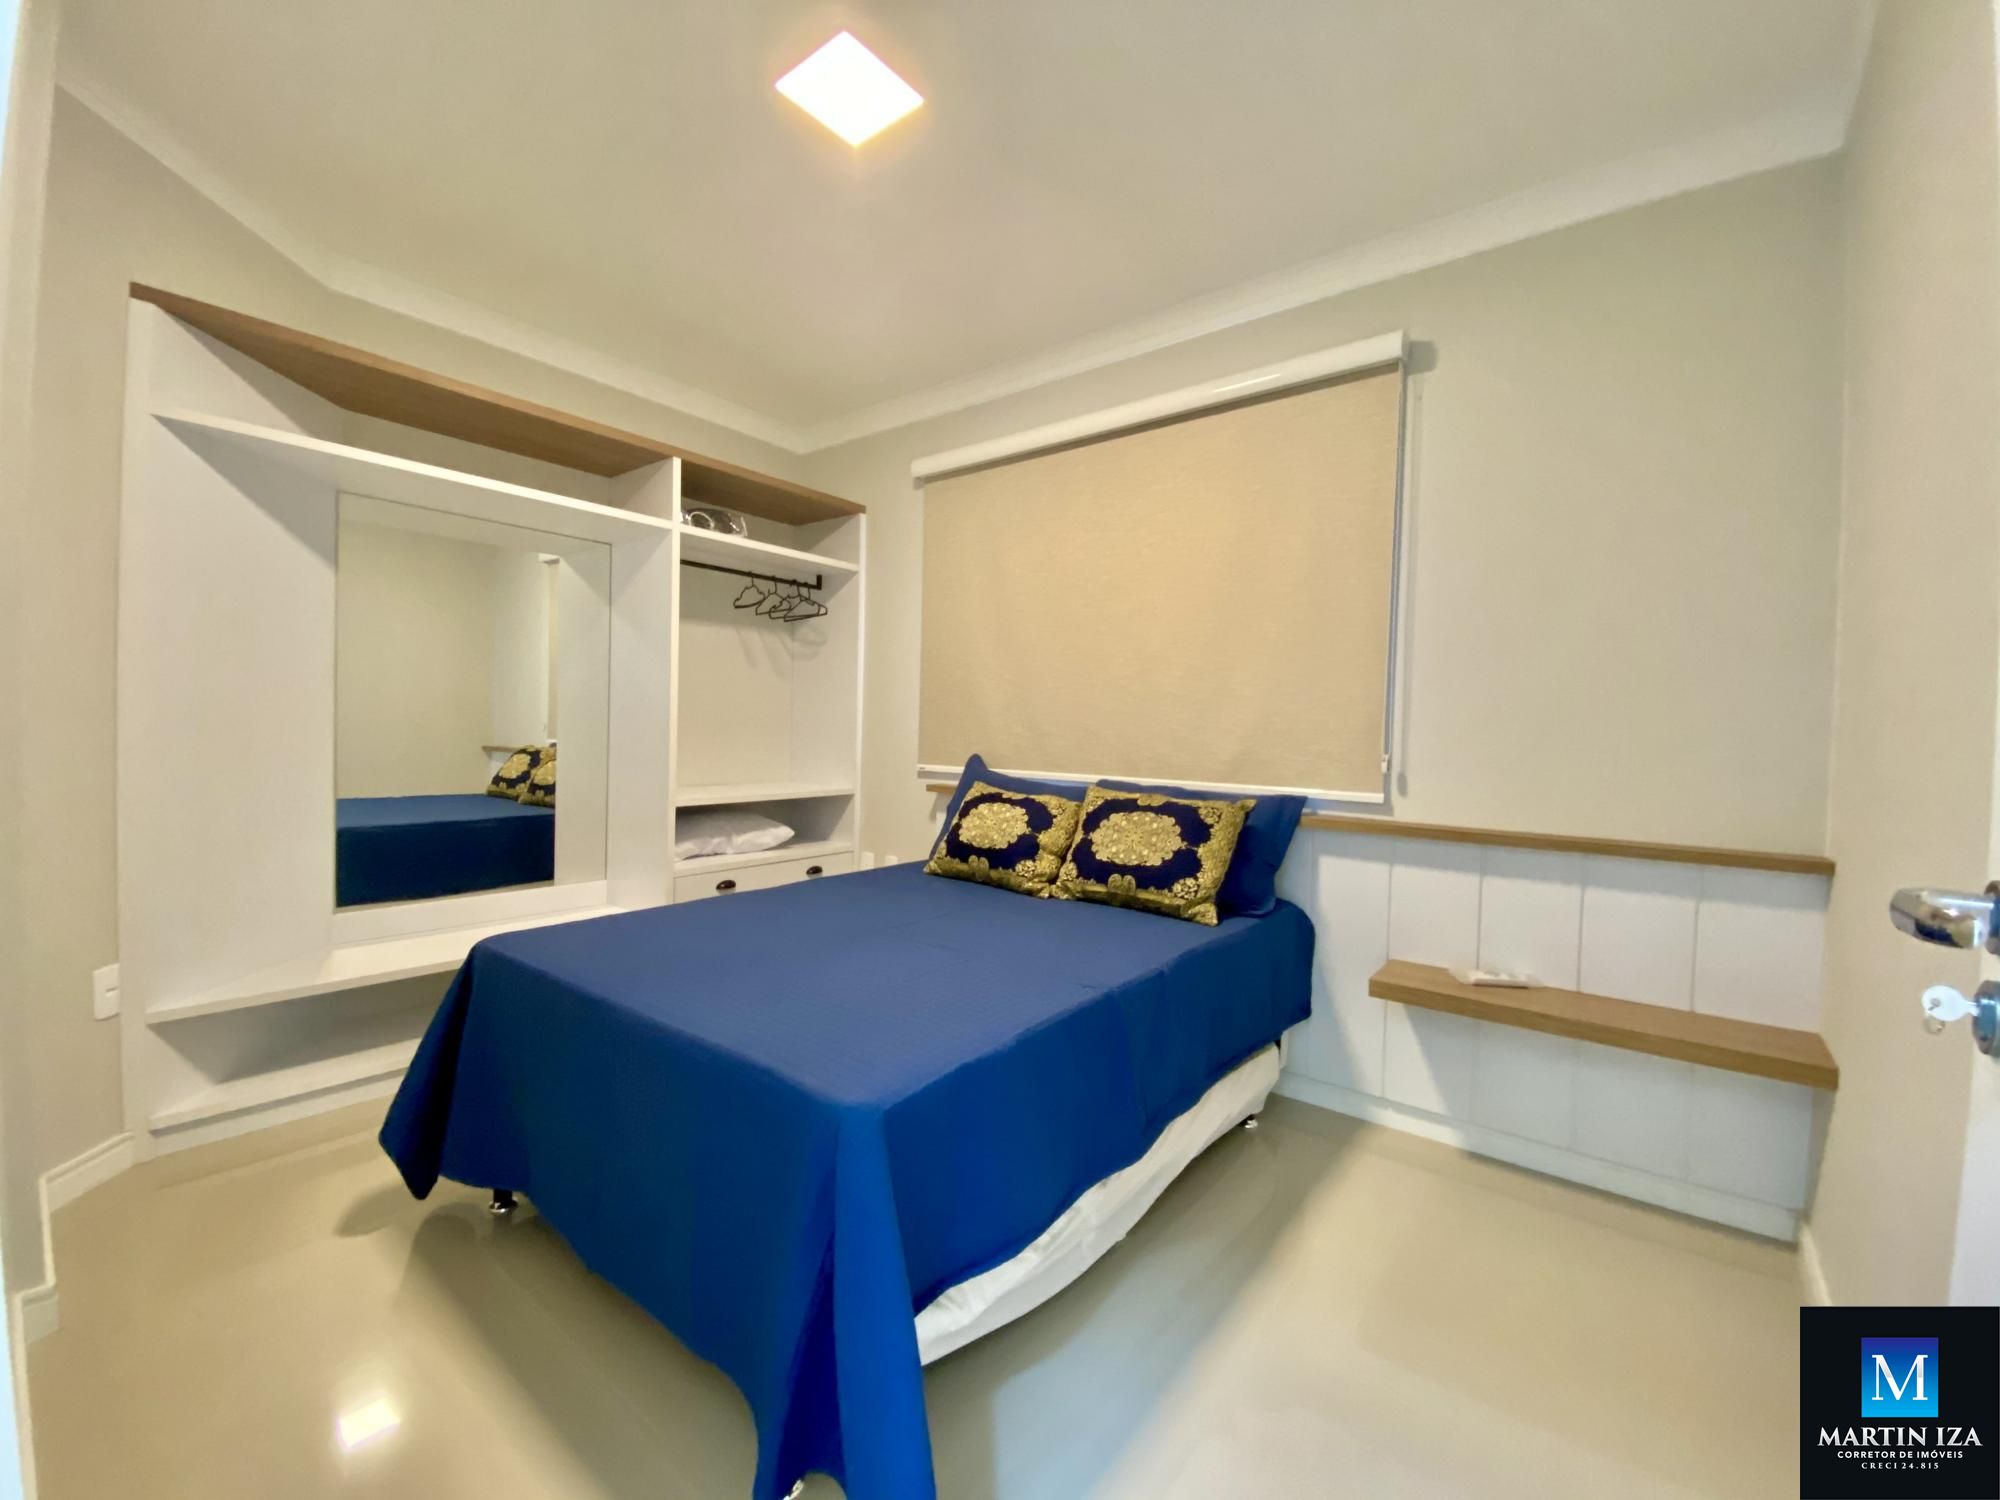 Apartamento com 2 Dormitórios para alugar, 74 m² por R$ 300,00